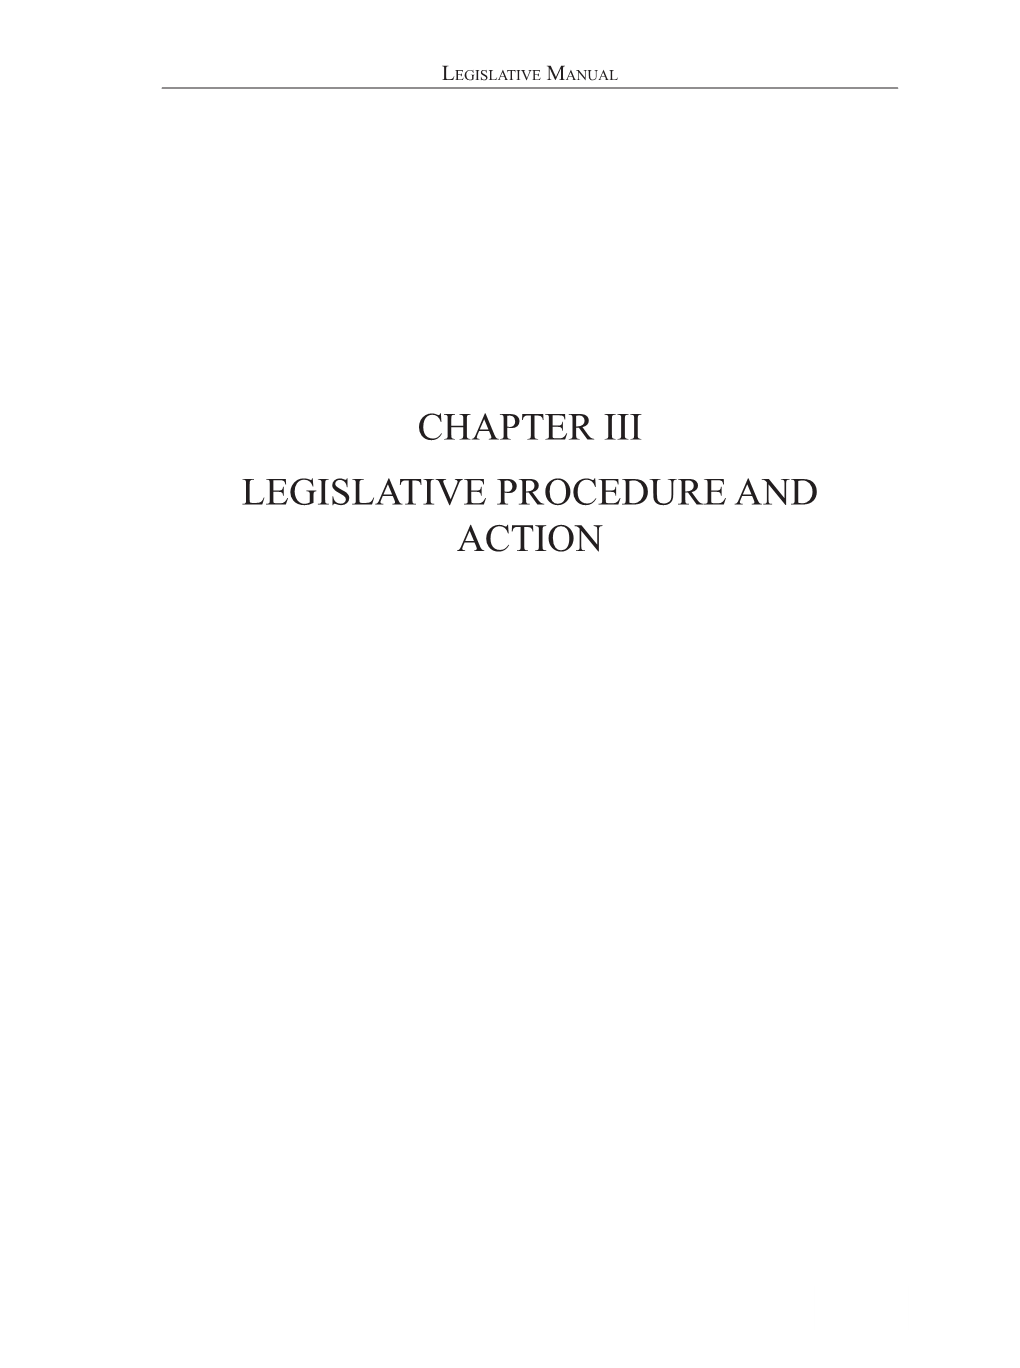 Chapter III—Legislative Procedure and Action